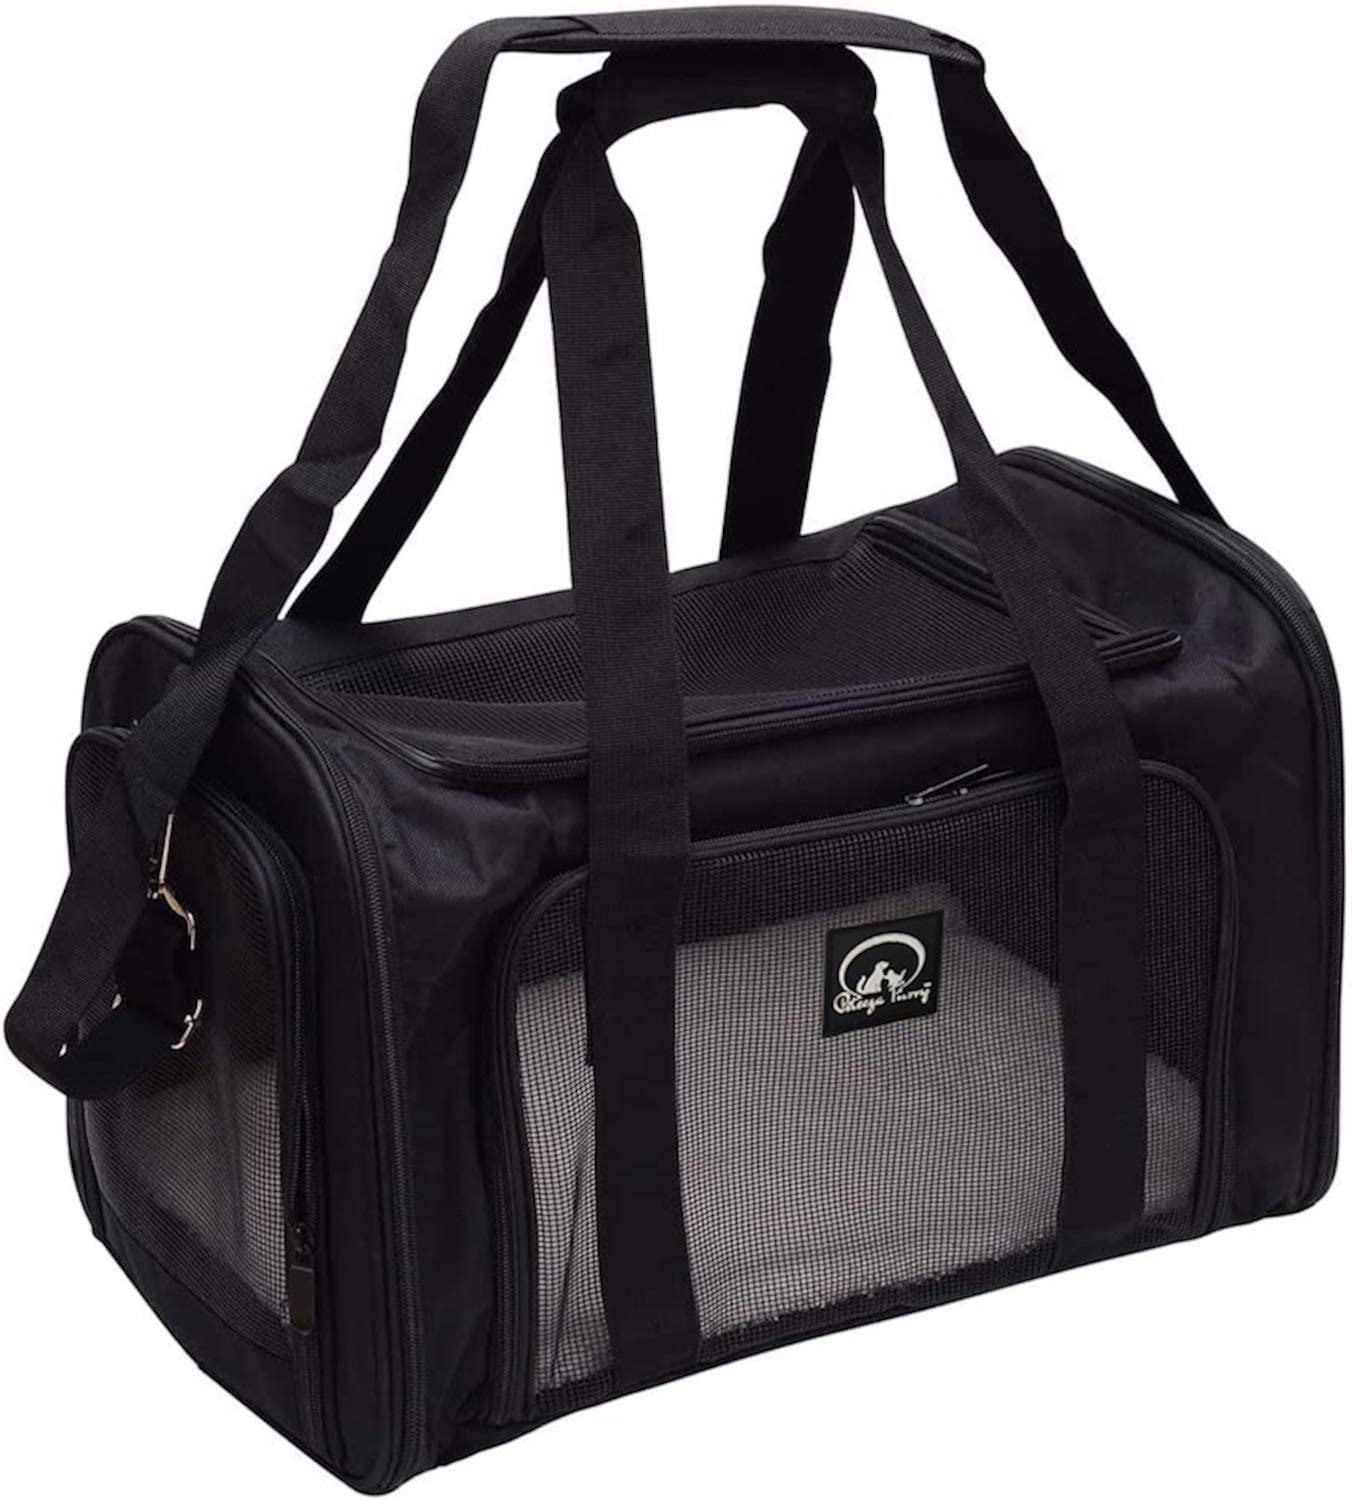 17" Airline Approved Pet Carrier Bag (Black)